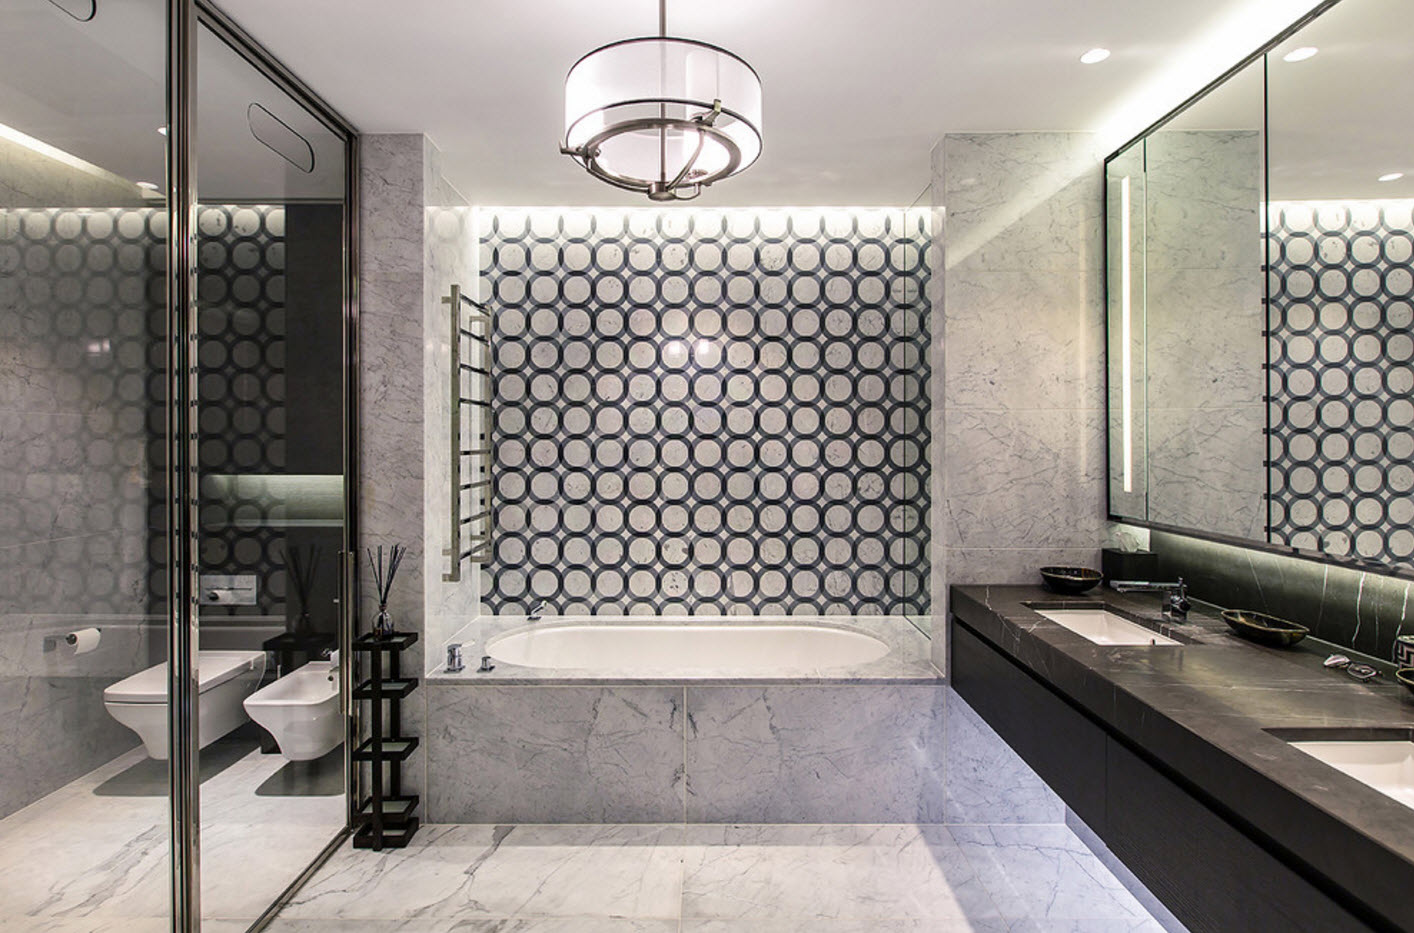 dizajn kupaonice s toaletnim geometrijskim uzorcima